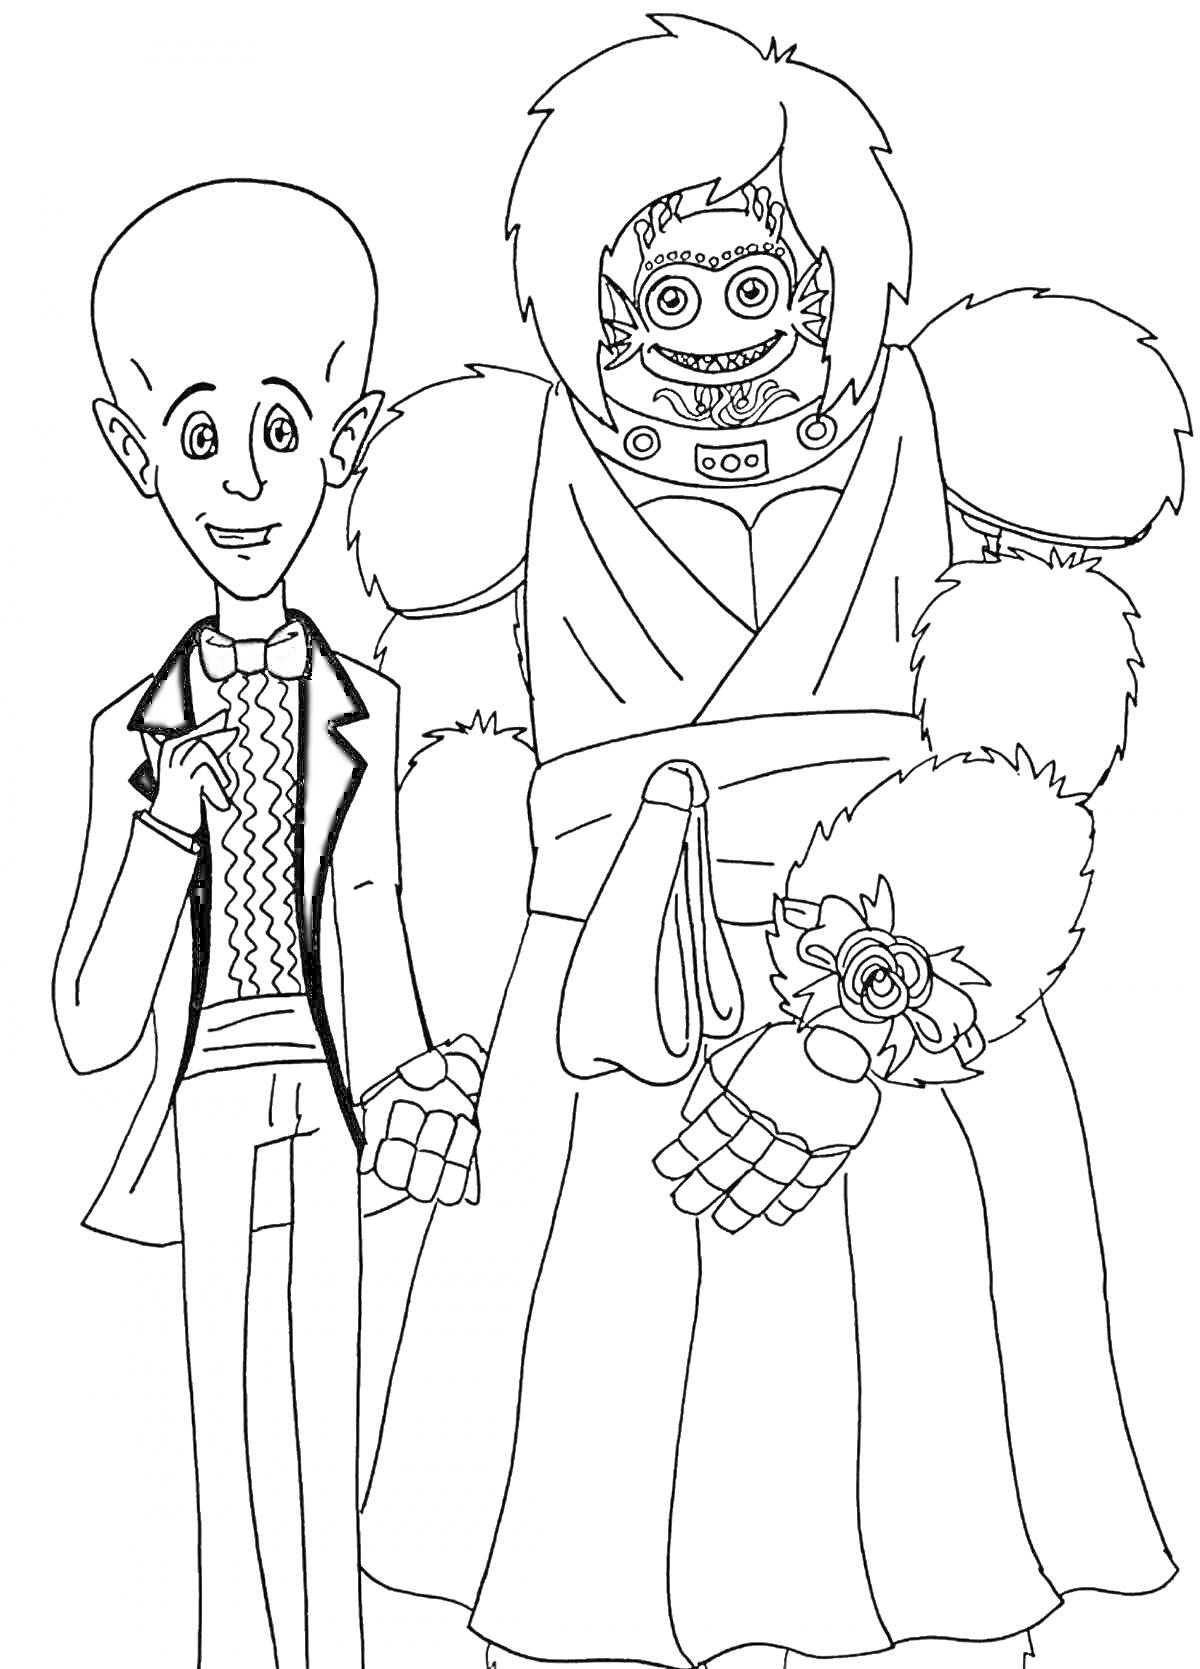 На раскраске изображено: Человек, Смокинг, Робот, Платье, Цветы, Для детей, Развлечения